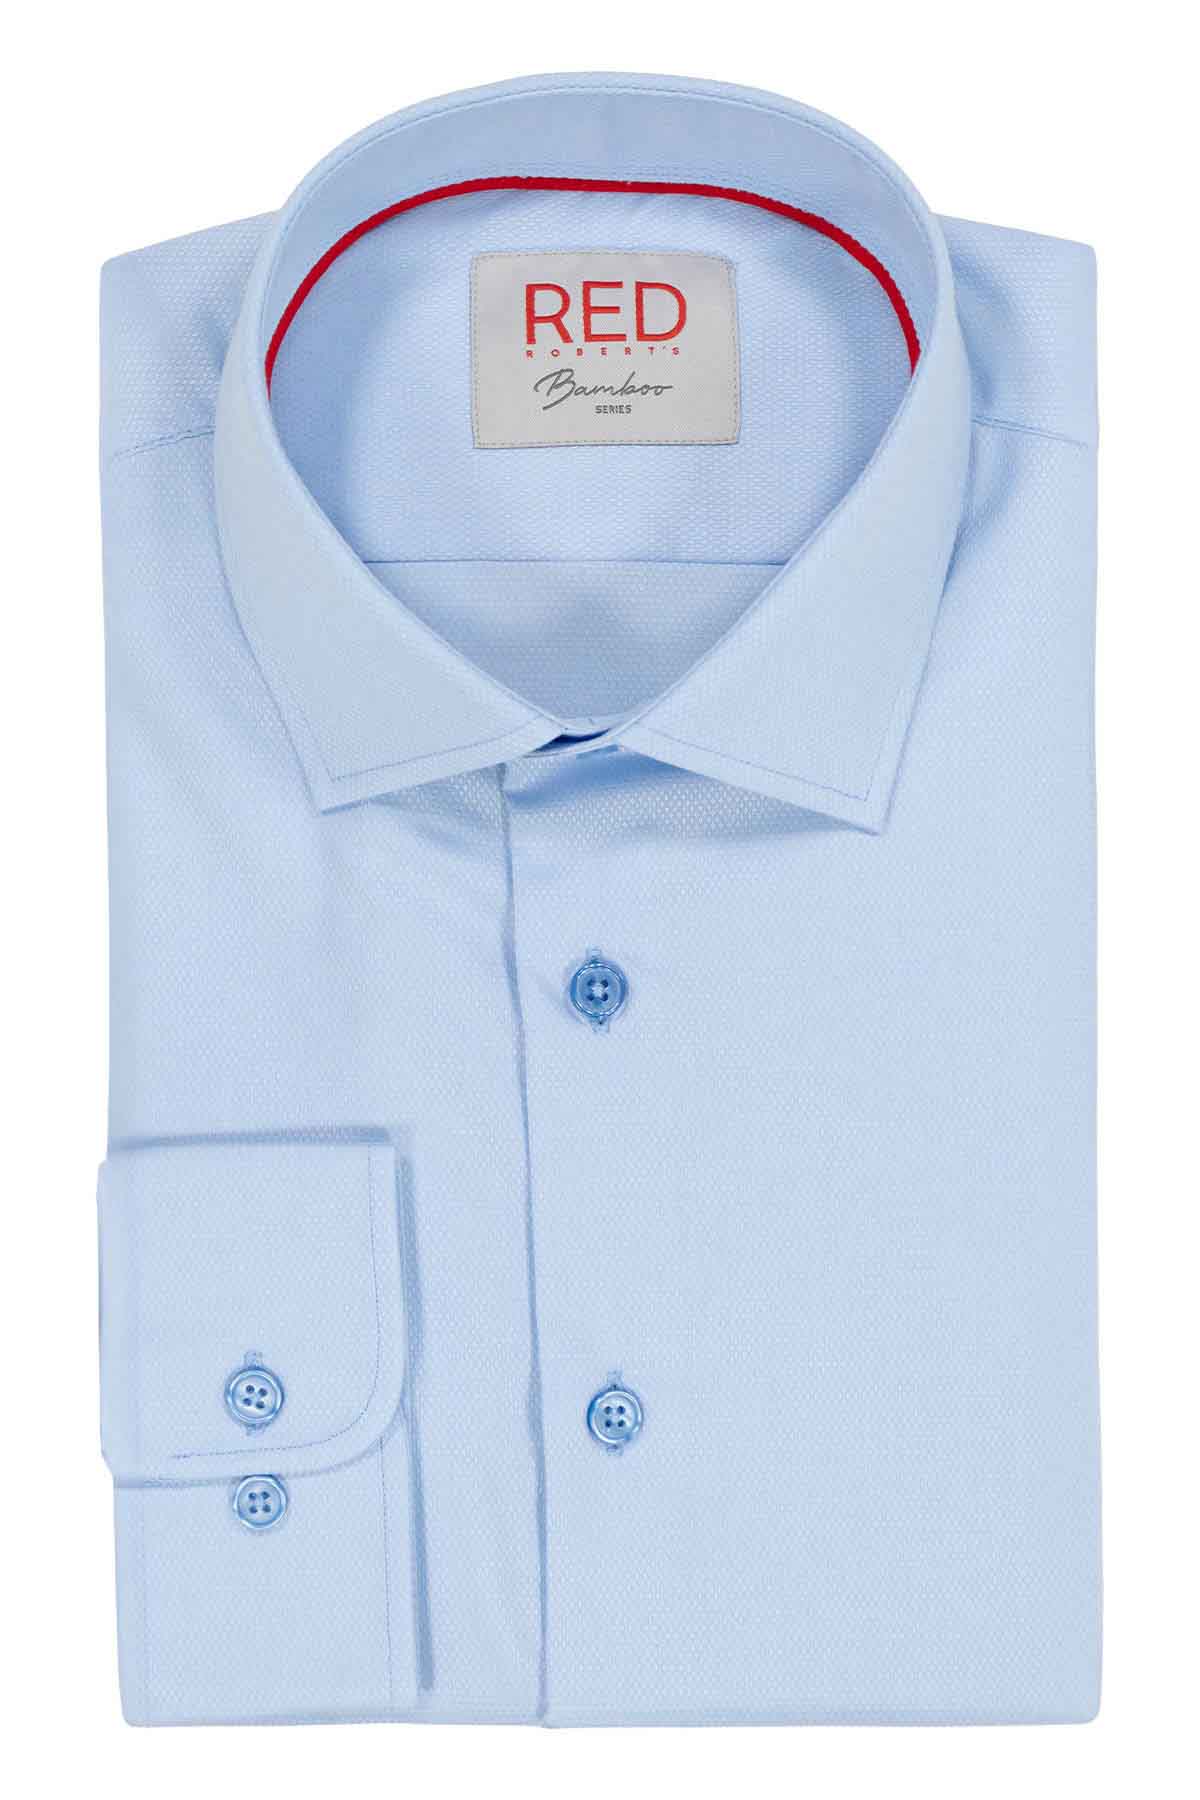 Camisa Vestir BAMBOO Roberts Red Azul Claro Slim Fit